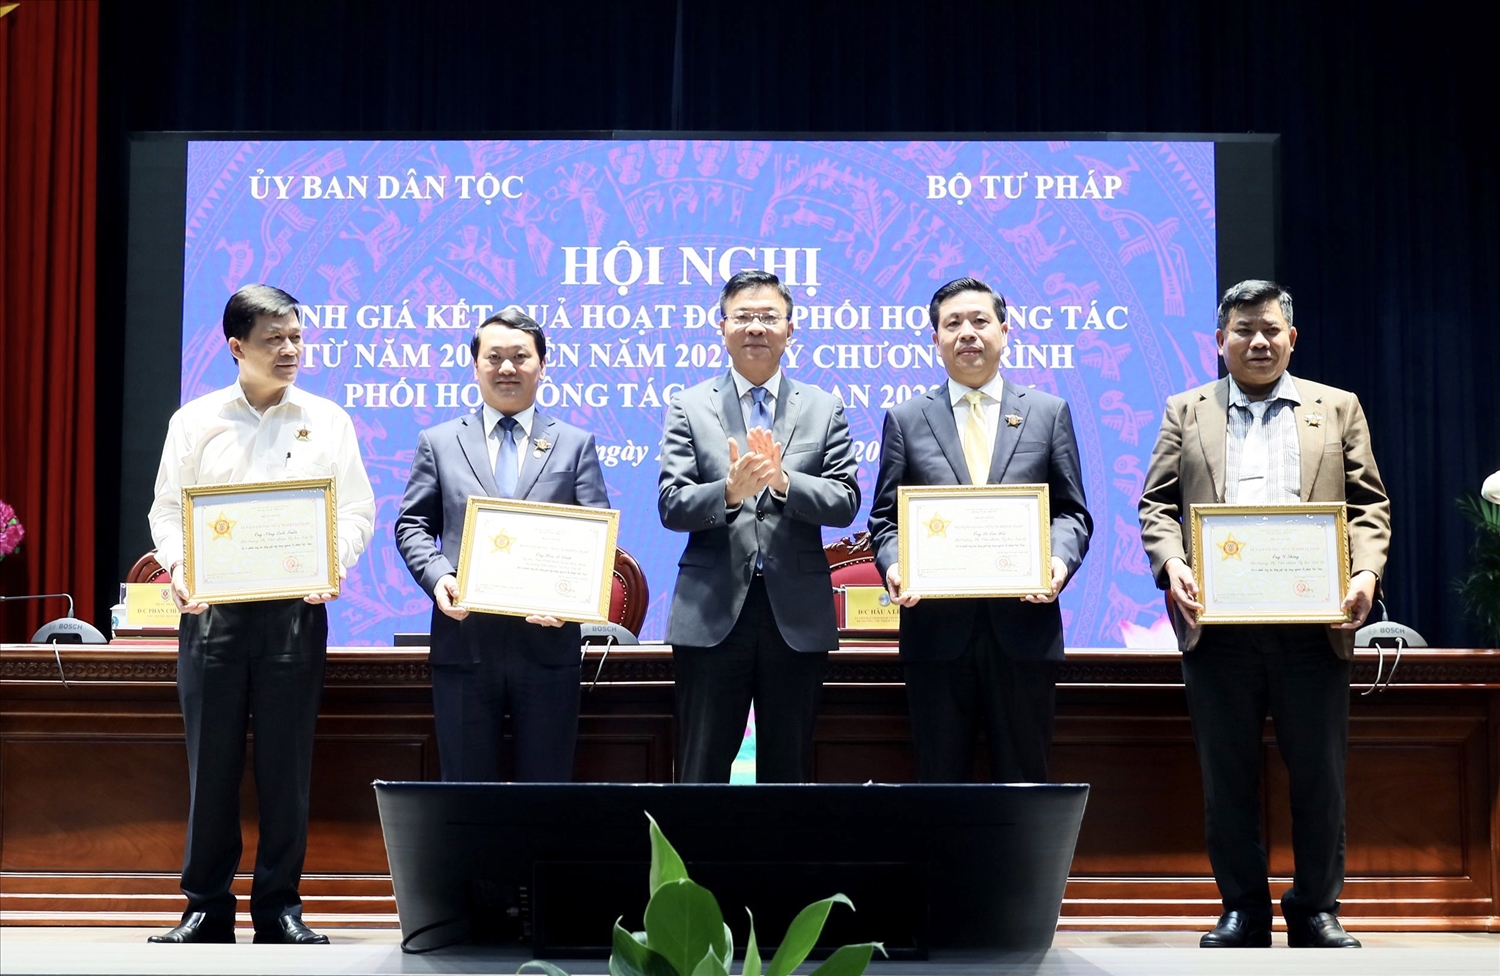 Bộ trưởng Bộ Tư pháp tặng Kỷ niệm chương “Vì sự nghiệp Tư pháp” cho các cá nhân thuộc Ủy ban Dân tộc vì đã có thành tích, công lao đóng góp cho sự nghiệp xây dựng, phát triển ngành Tư pháp Việt Nam